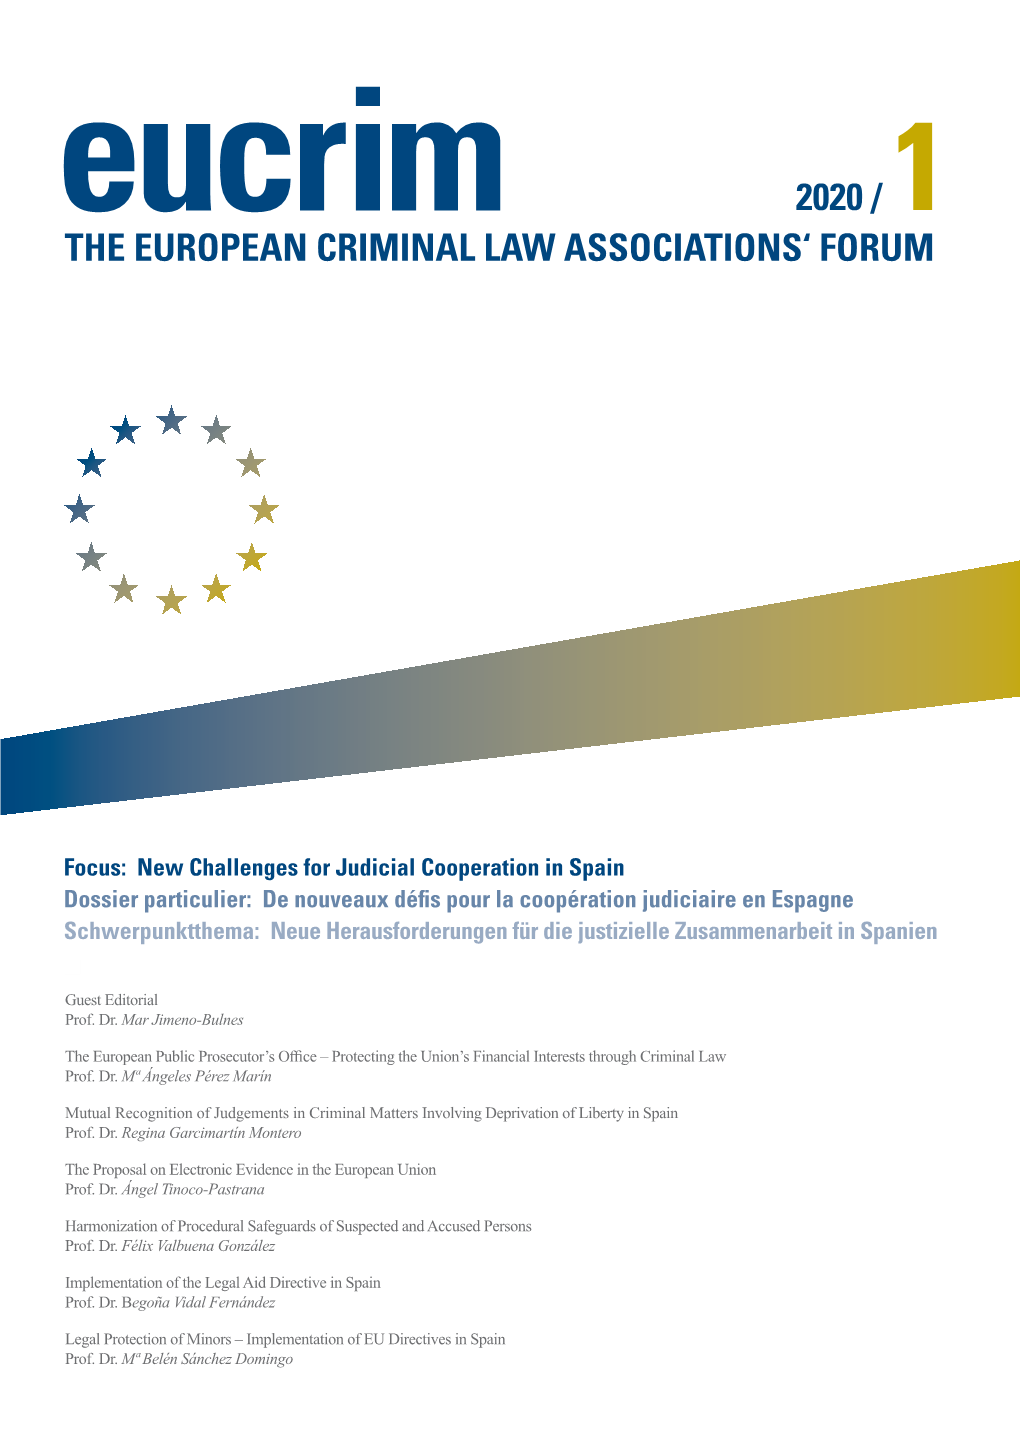 The European Criminal Law Associations' Forum 2020